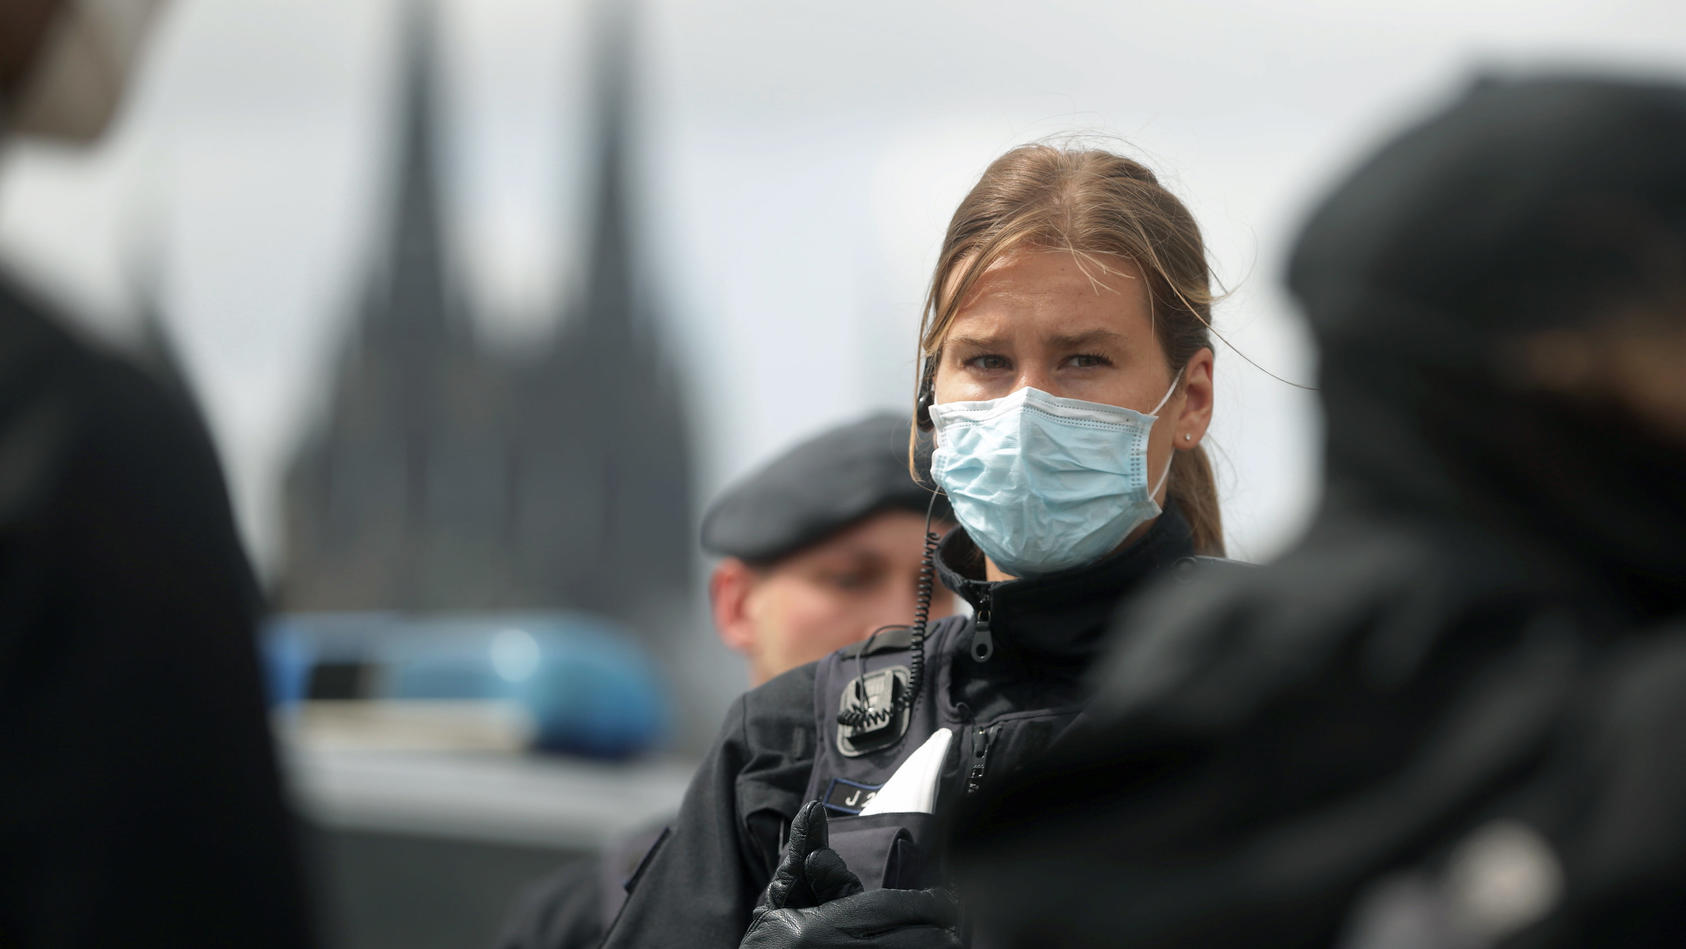 23.05.2020, Nordrhein-Westfalen, Köln: Bei einer Demonstration gegen Corona-Beschränkungen steht eine Polizistin mit medizinischem Mundschutz. Im Hintergrund der Kölner Dom. Foto: David Young/dpa +++ dpa-Bildfunk +++